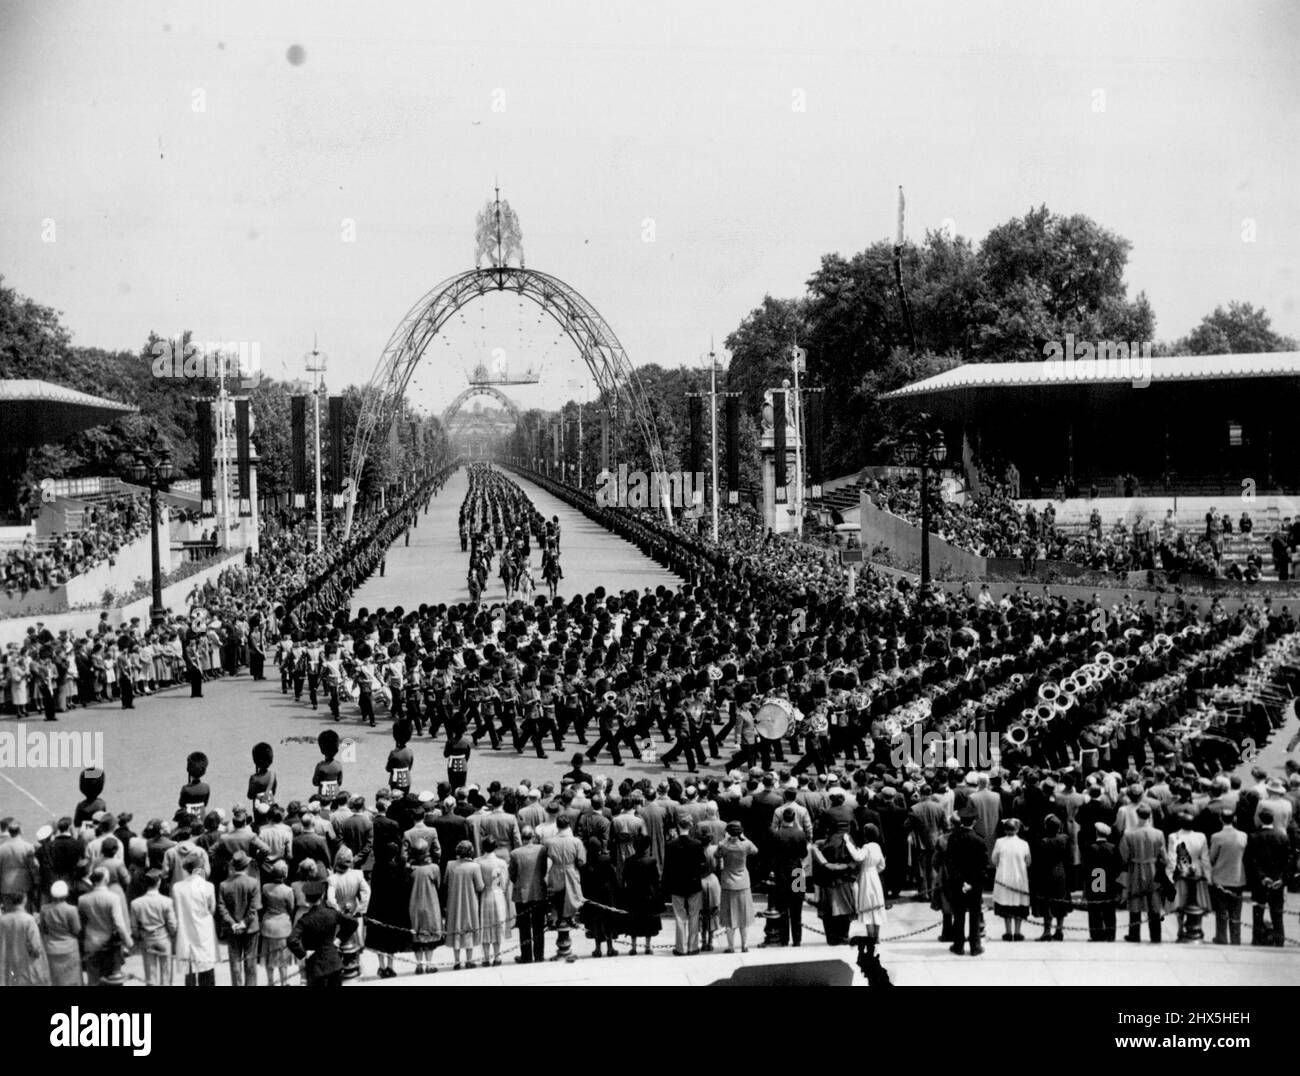 In der Mall -- Menschenmengen beobachten die Wachen, während sie während der Probe der Trooping the Color Zeremonie, die am Donnerstag, dem offiziellen Geburtstag der Königin, stattfindet, durch die Mall marschieren. 9. Juni 1953. (Foto von Daily Express Picture). Stockfoto